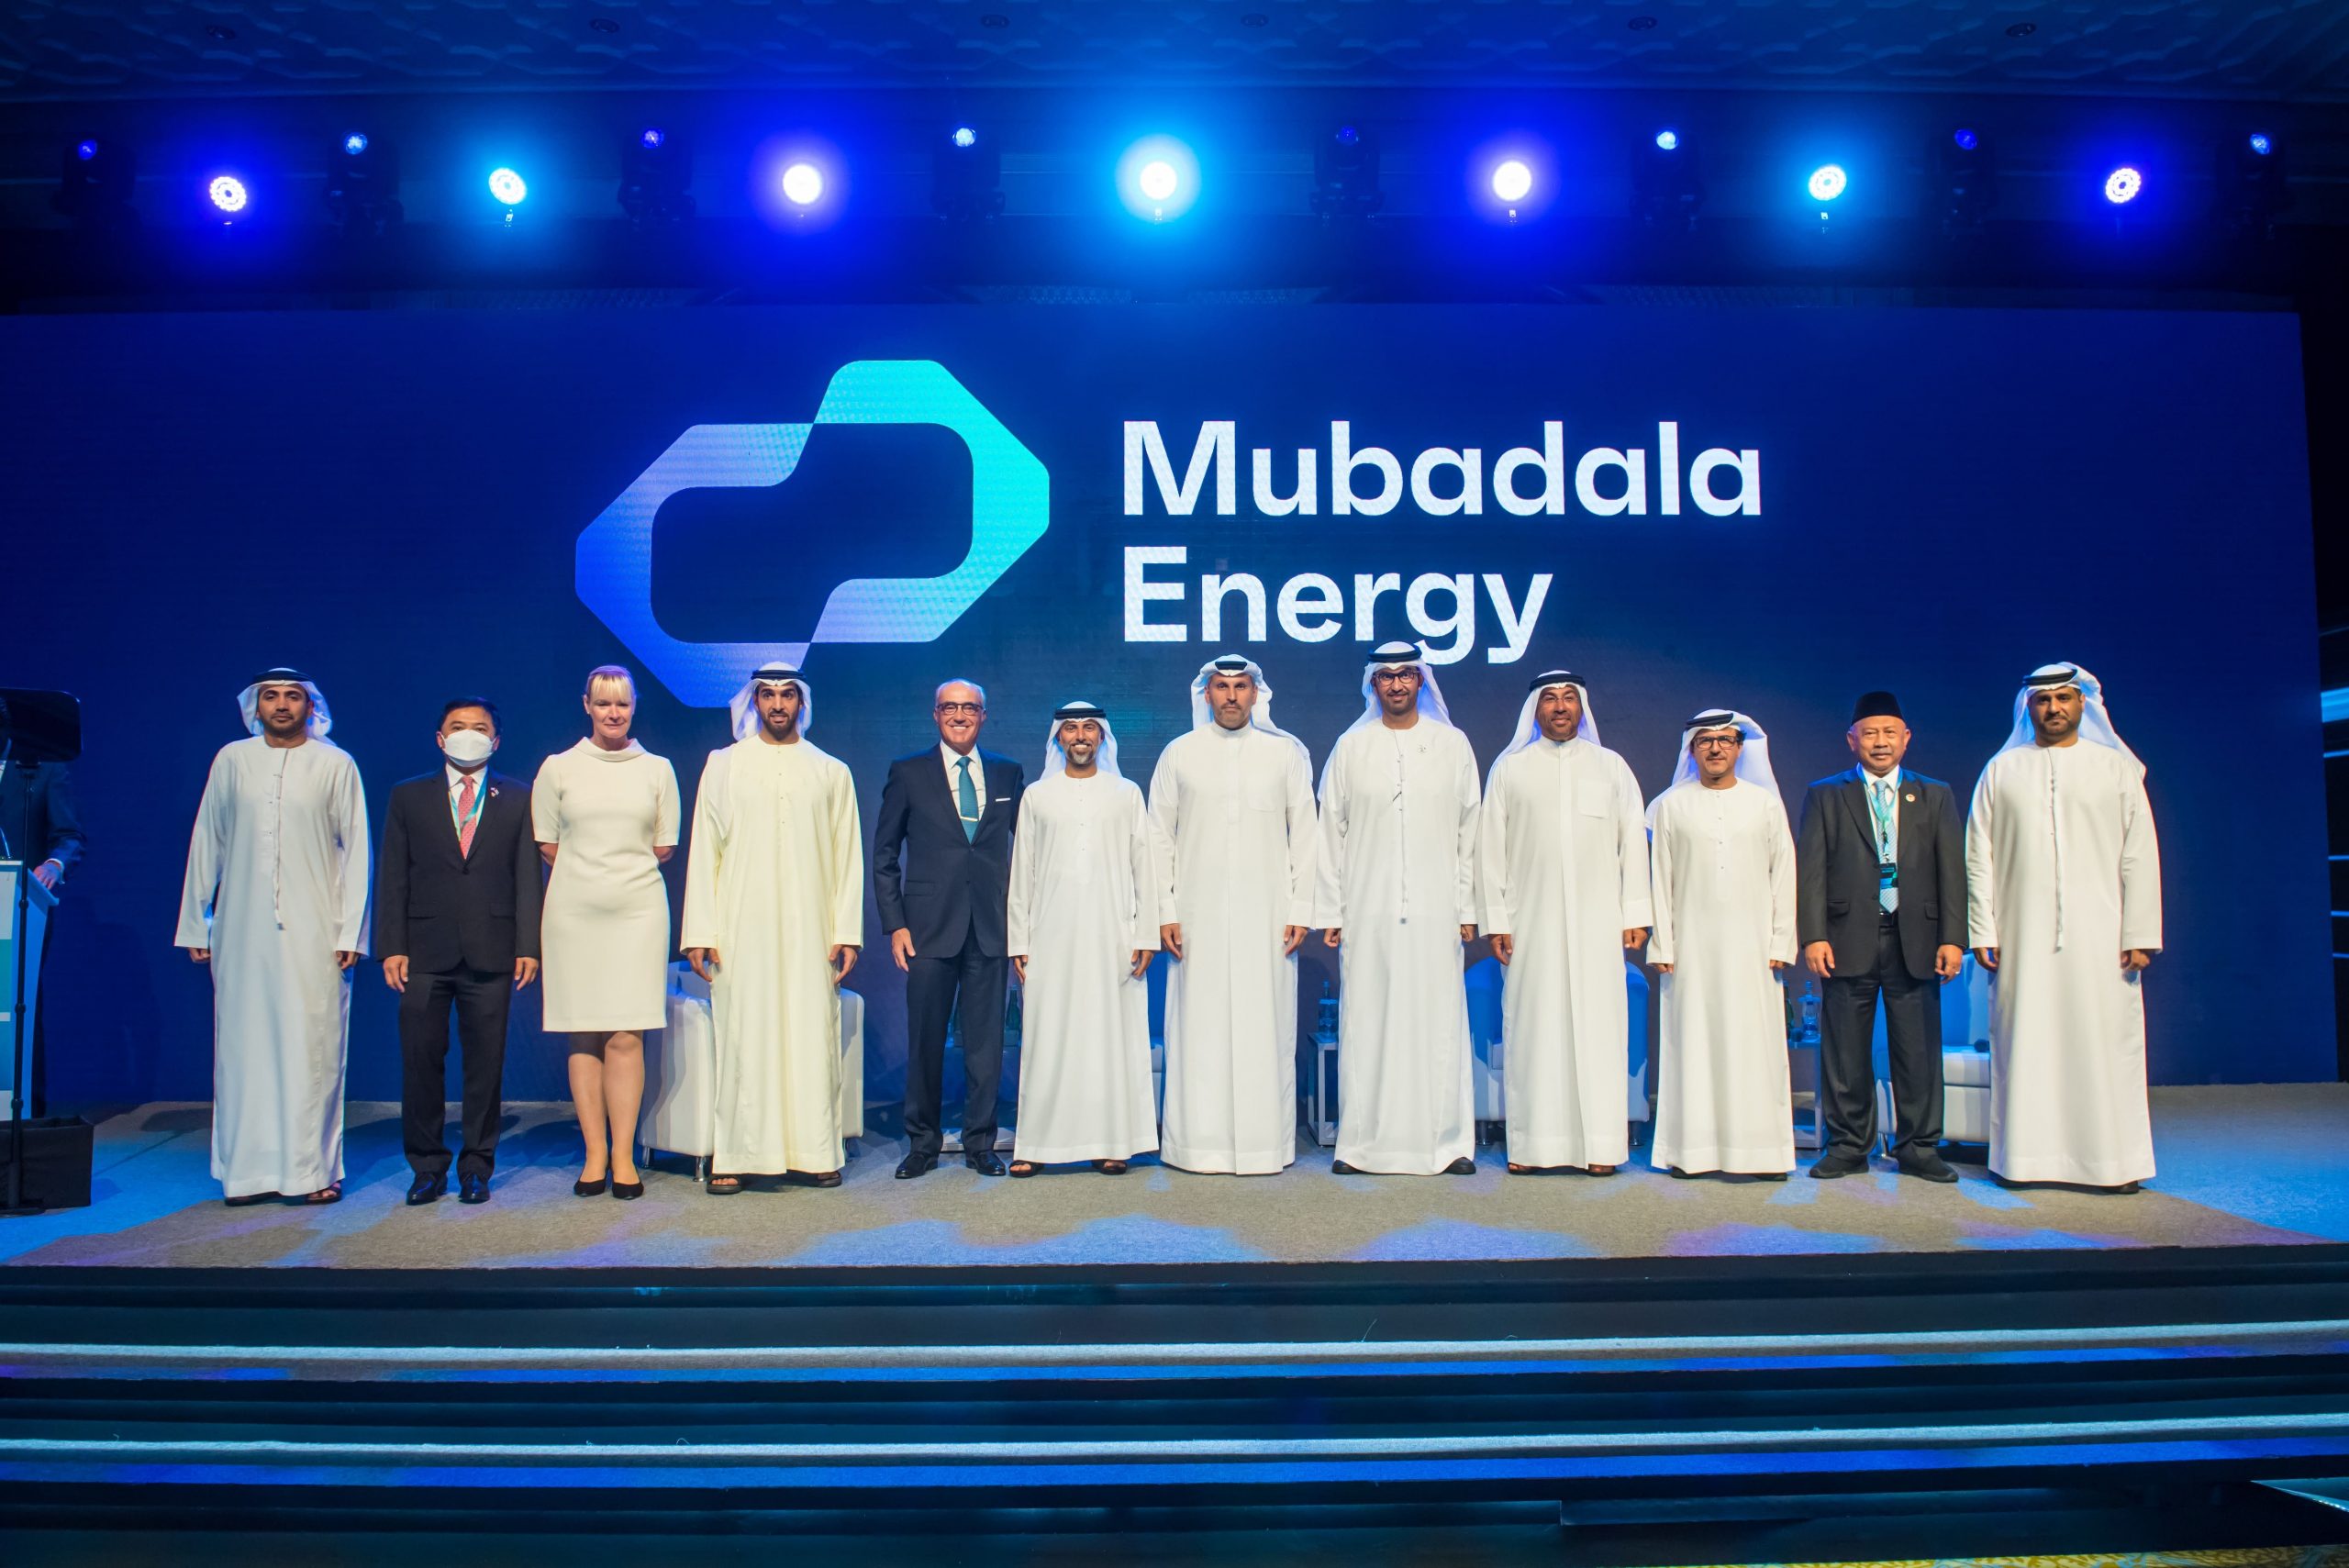 مبادلة للطاقة الإماراتية